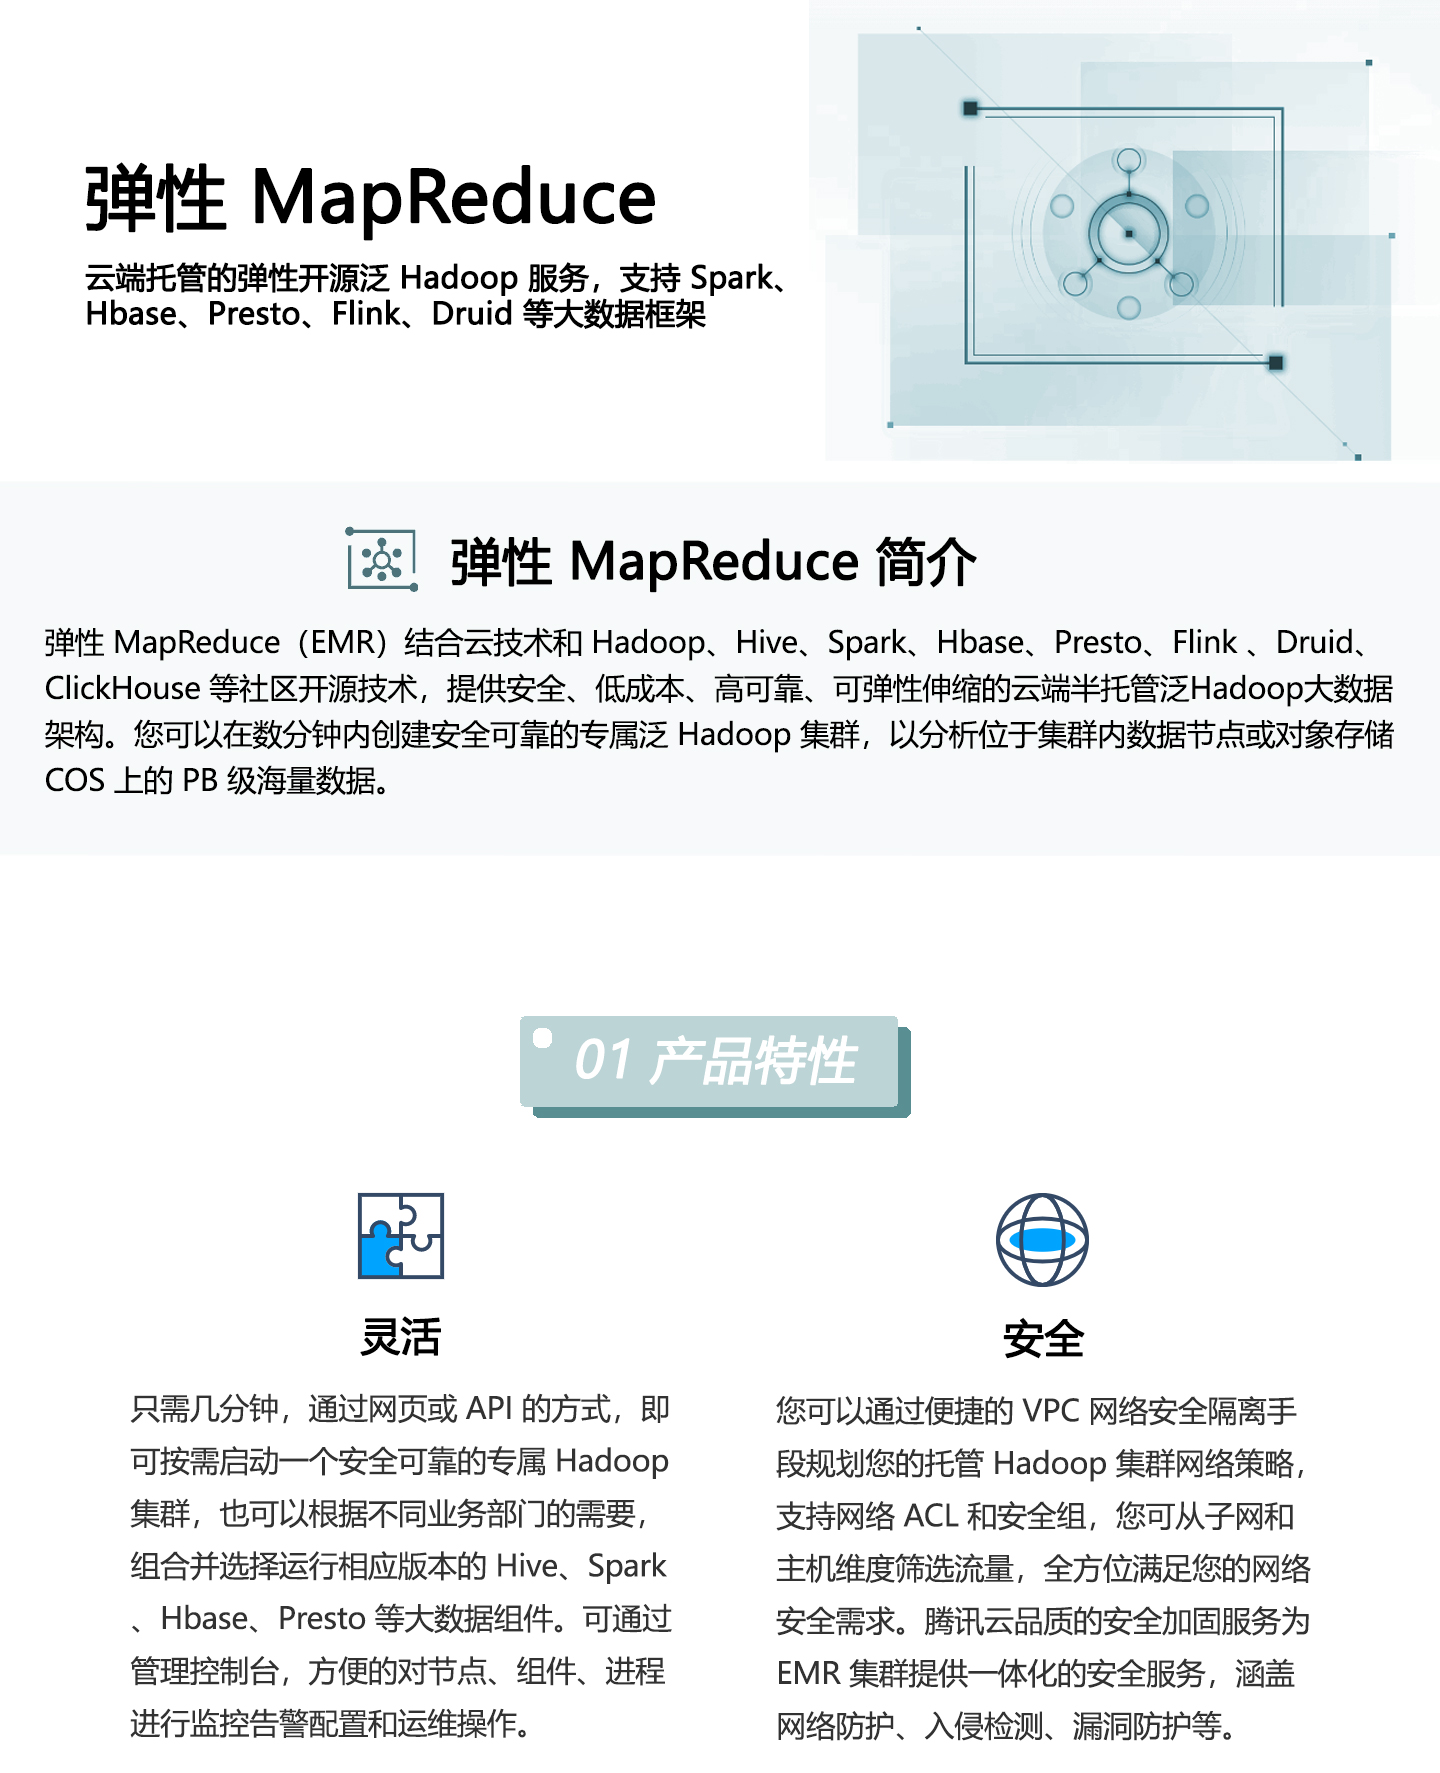 弹性-MapReduce-1440_01.jpg